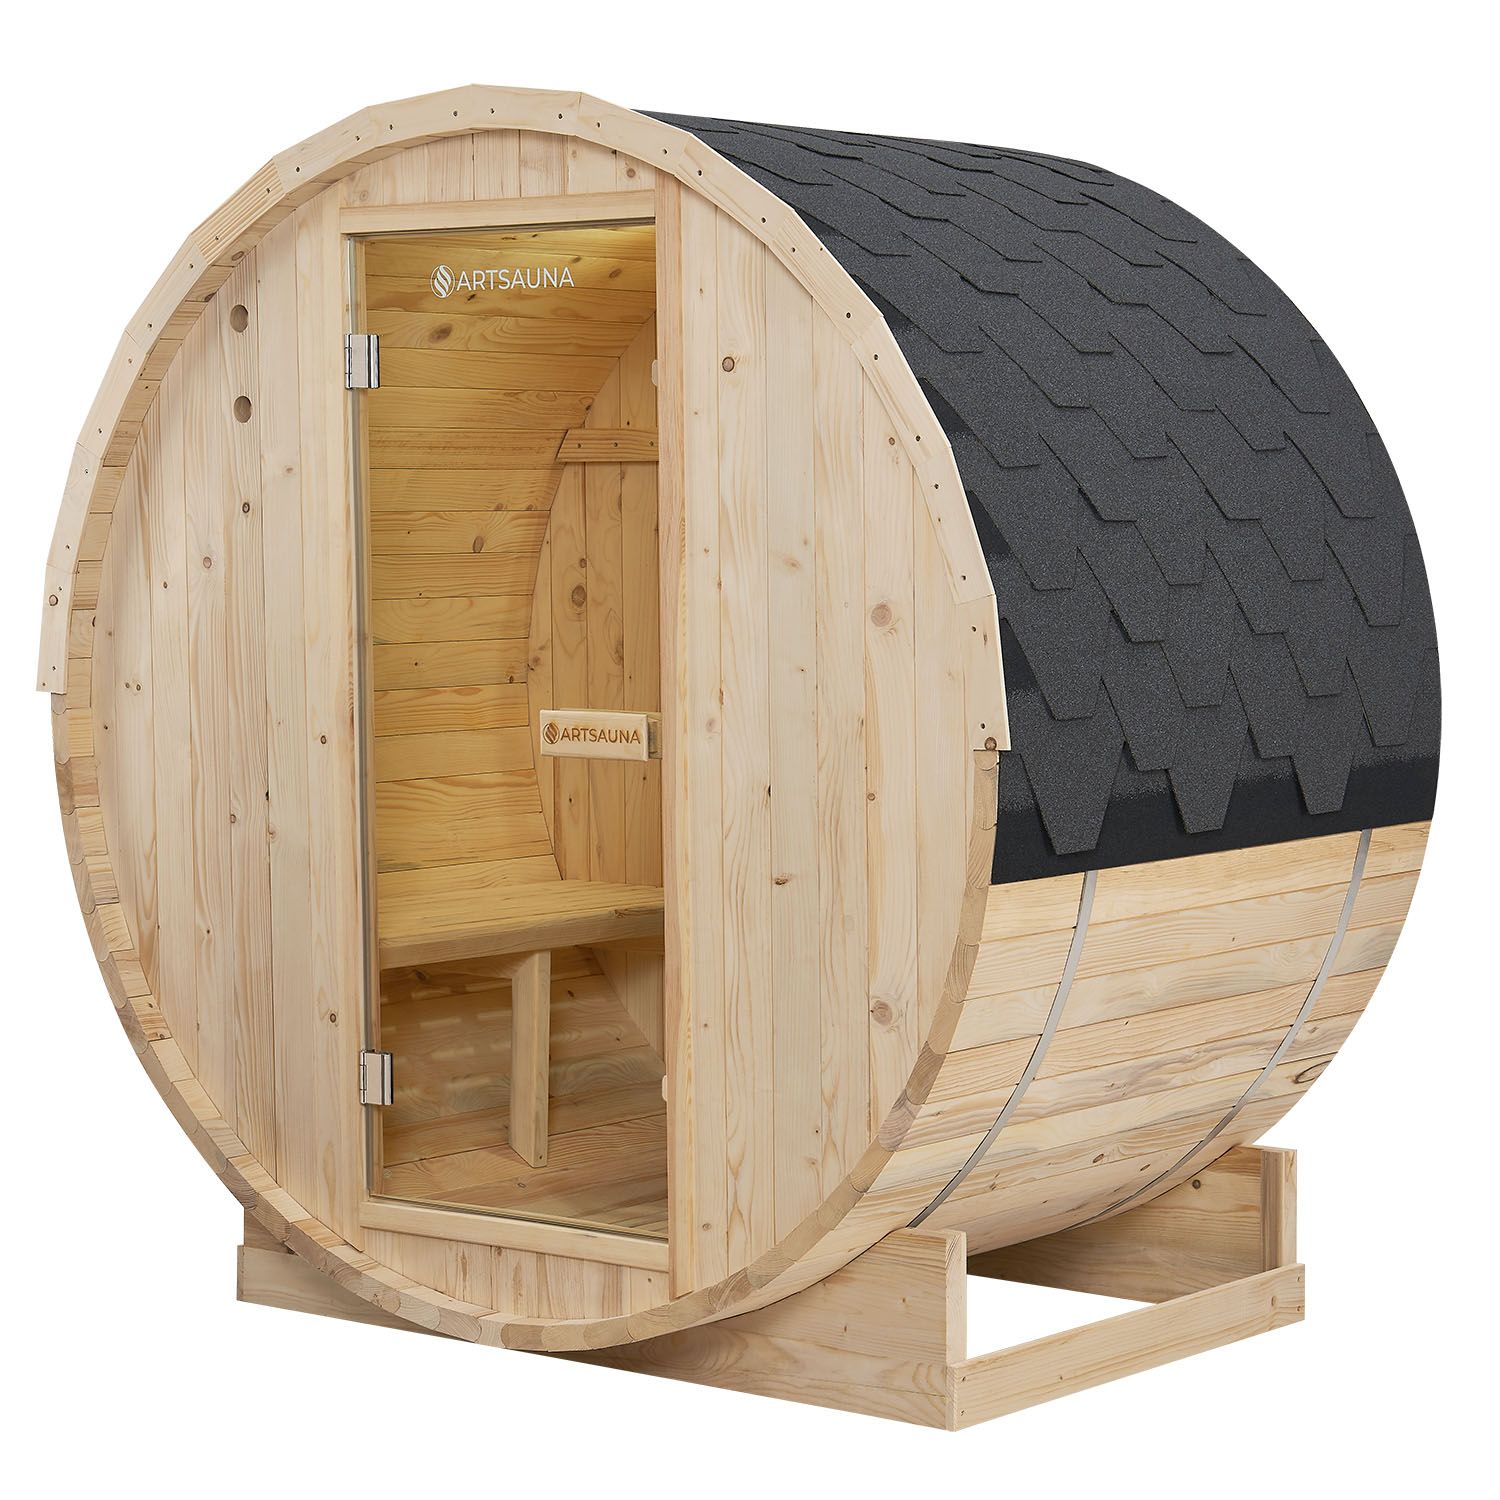 Juskys Venkovní sudová sauna Spitzbergen M délka 120 cm průměr 190 cm (3,6 kW)